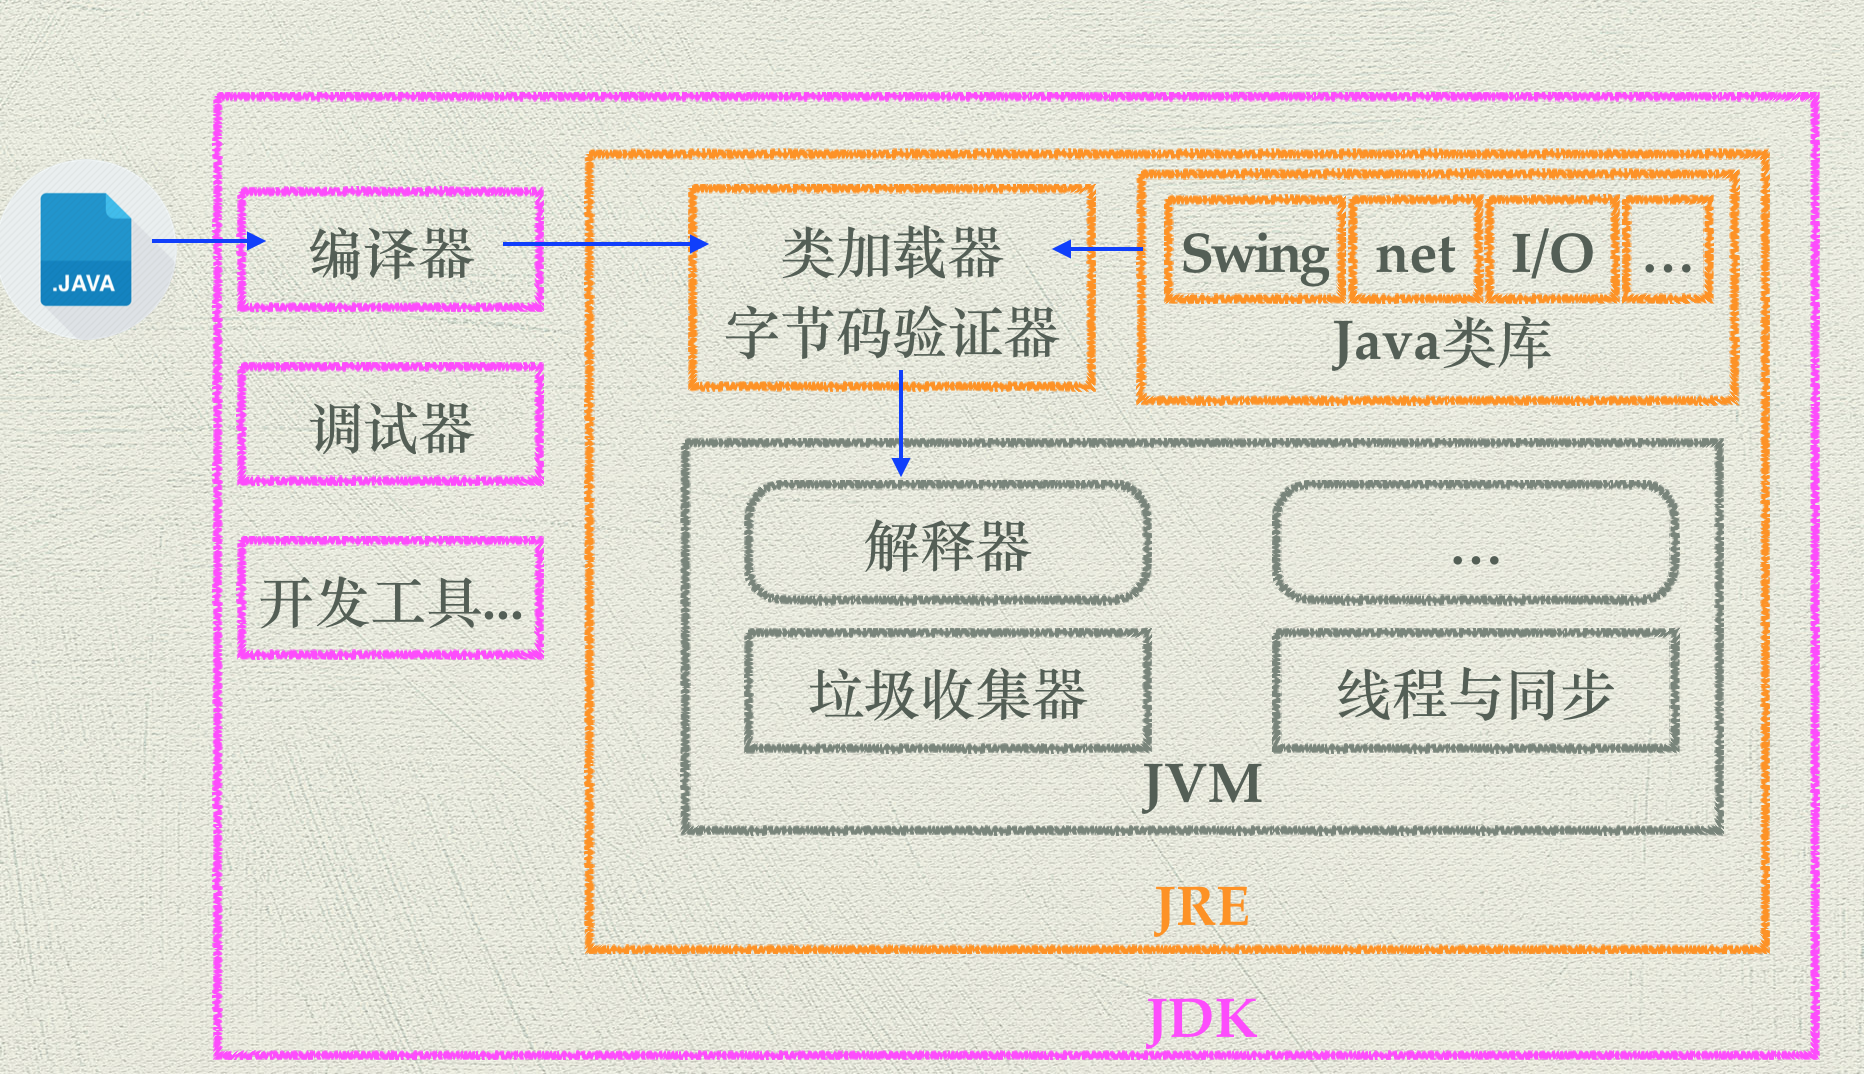 Java初学者首先下载 JDK 开发环境,然后再下 e